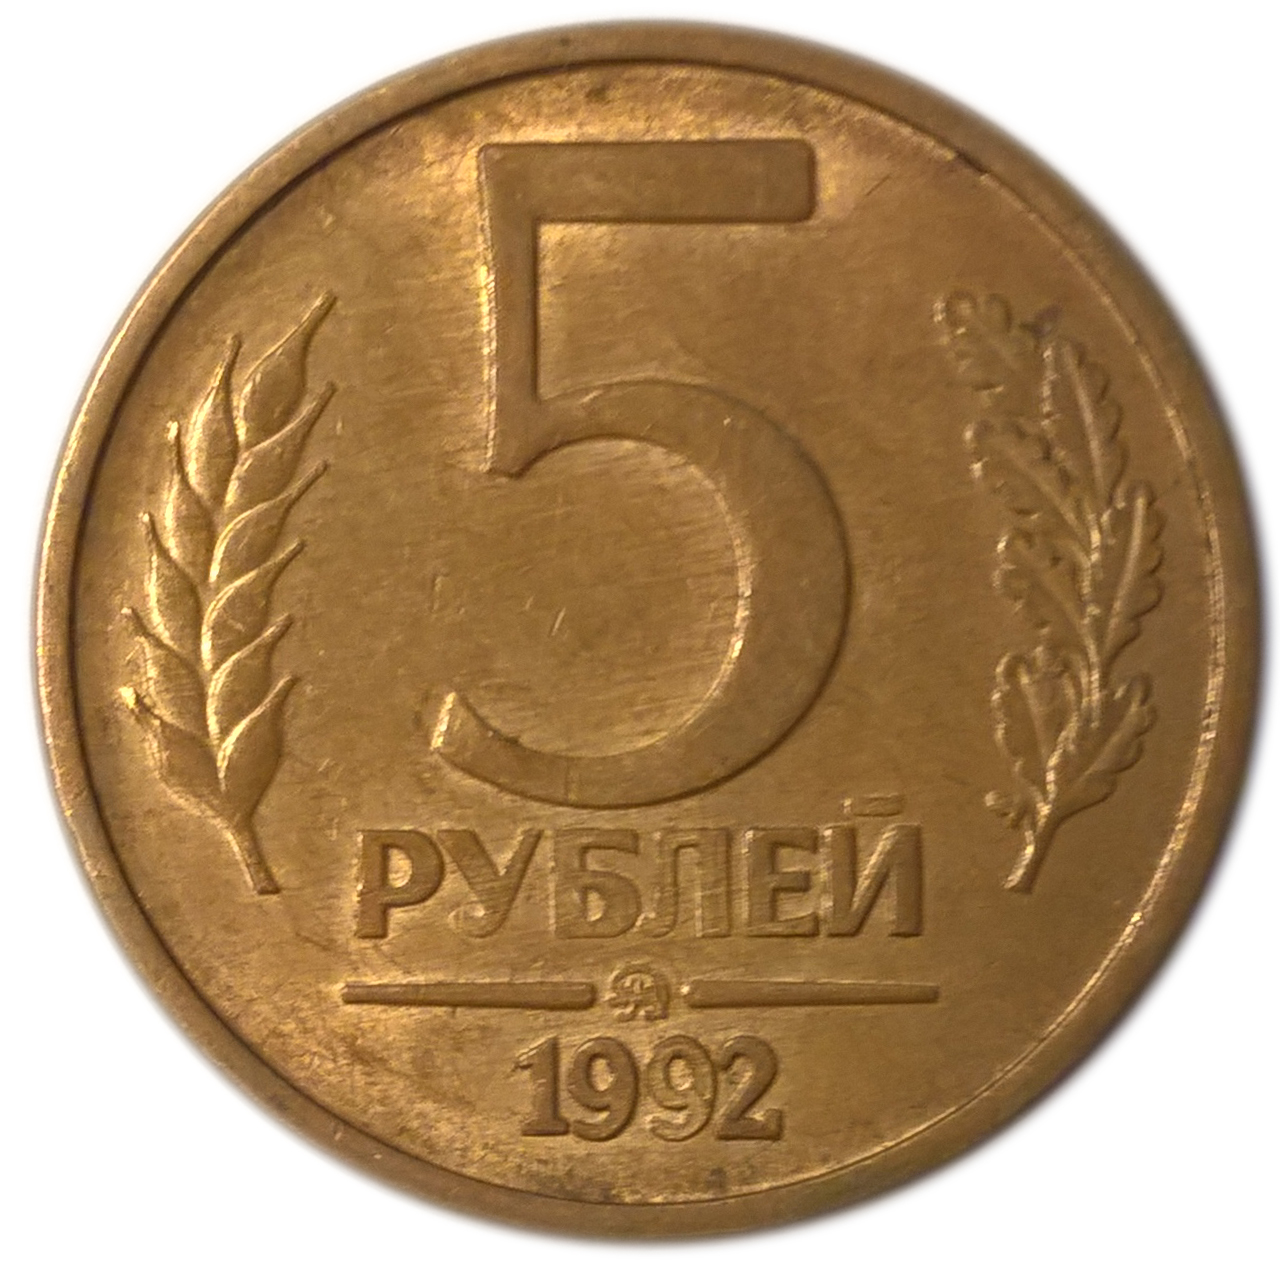 Количество монеты 5 рублей. 5 Рублей 1992 года. 5 Рублей 1992 м. 5 Рублей 1992 СПМД. Монета 5 рублей 1992.